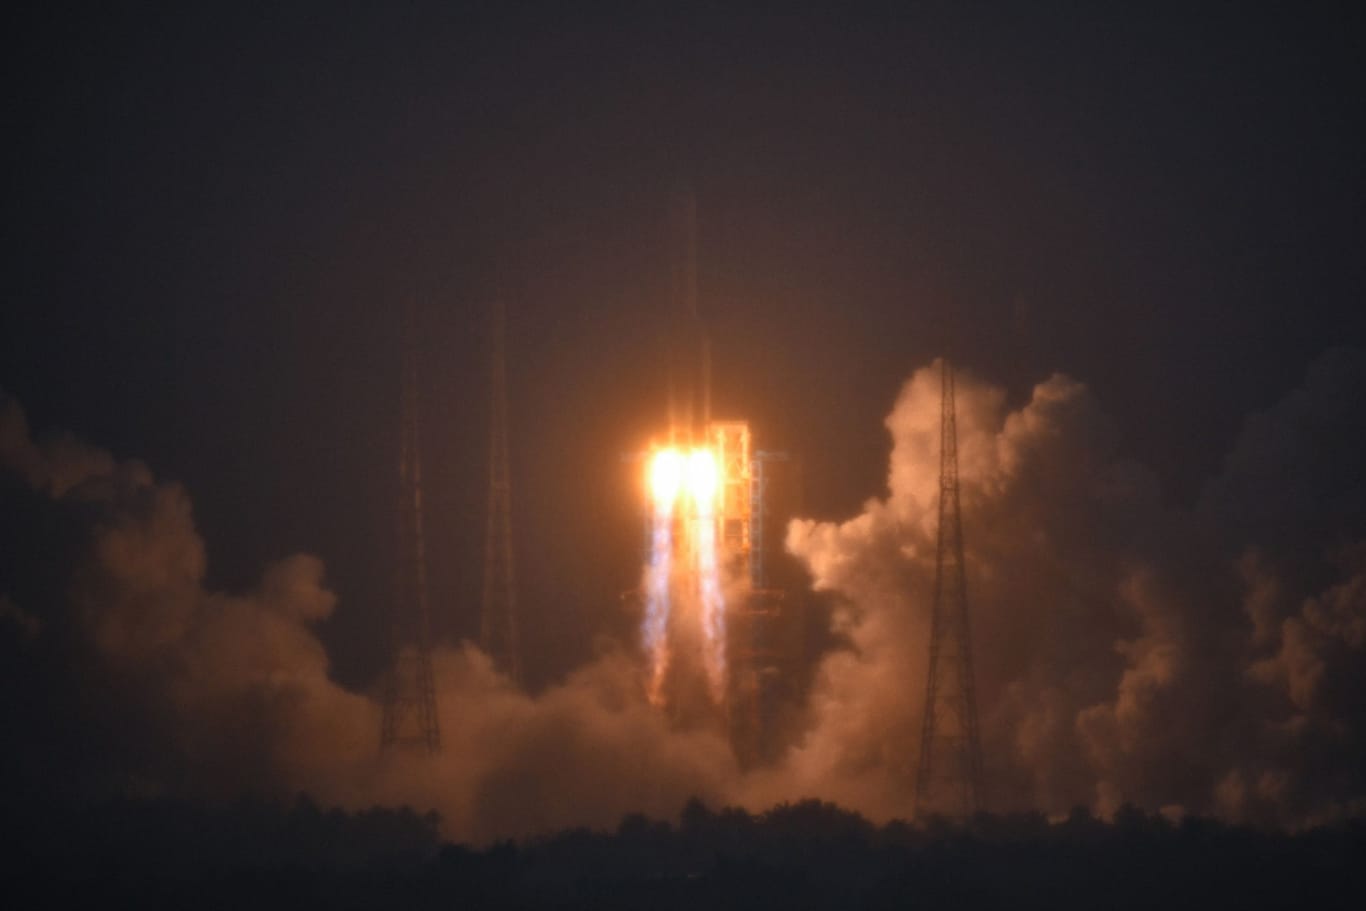 Chinesische Sonde landet erfolgreich auf Mond